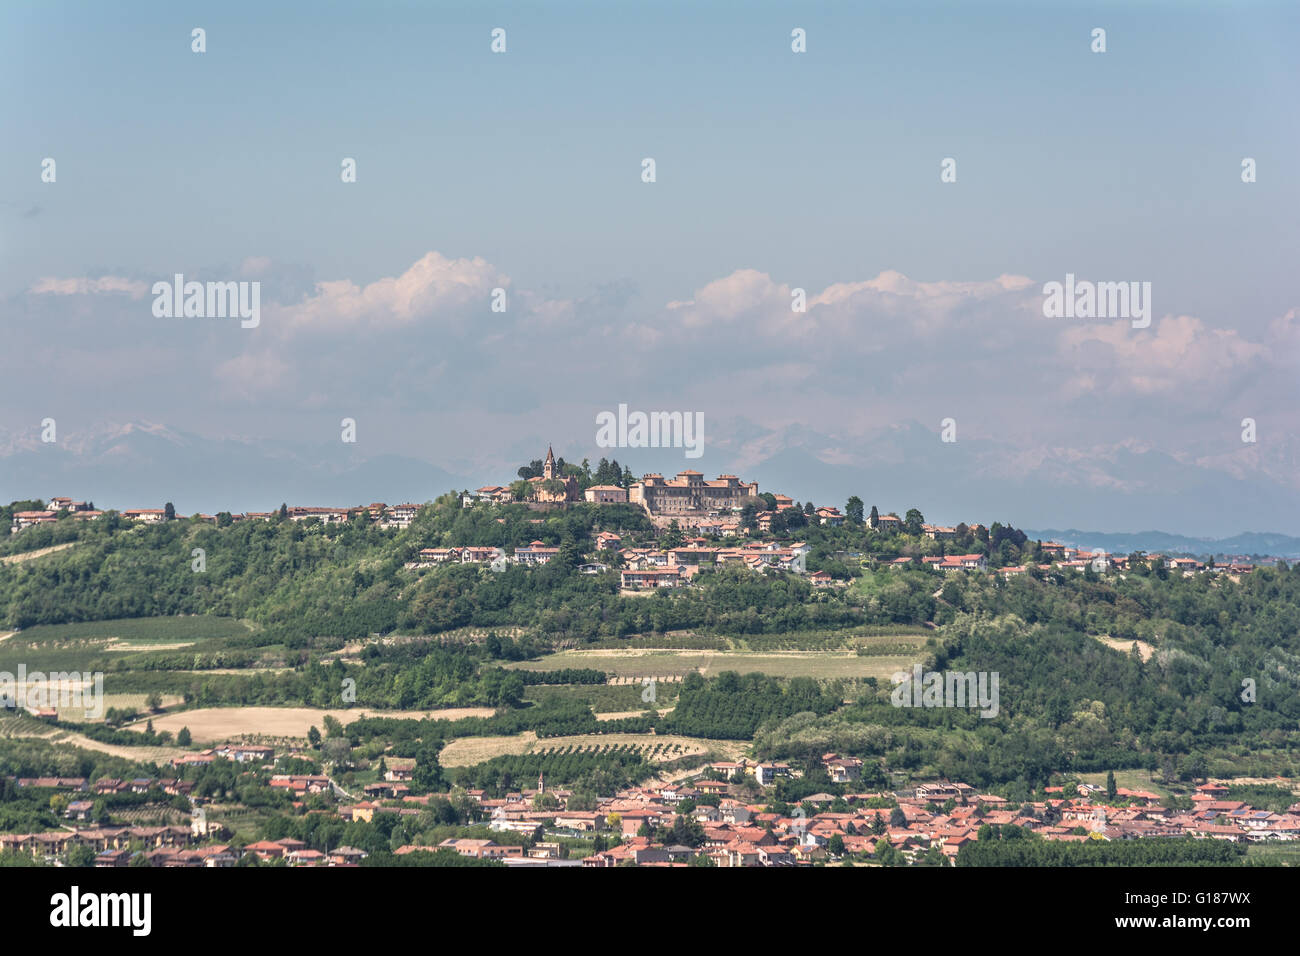 Villages dans la région de Langhe, Italie Banque D'Images